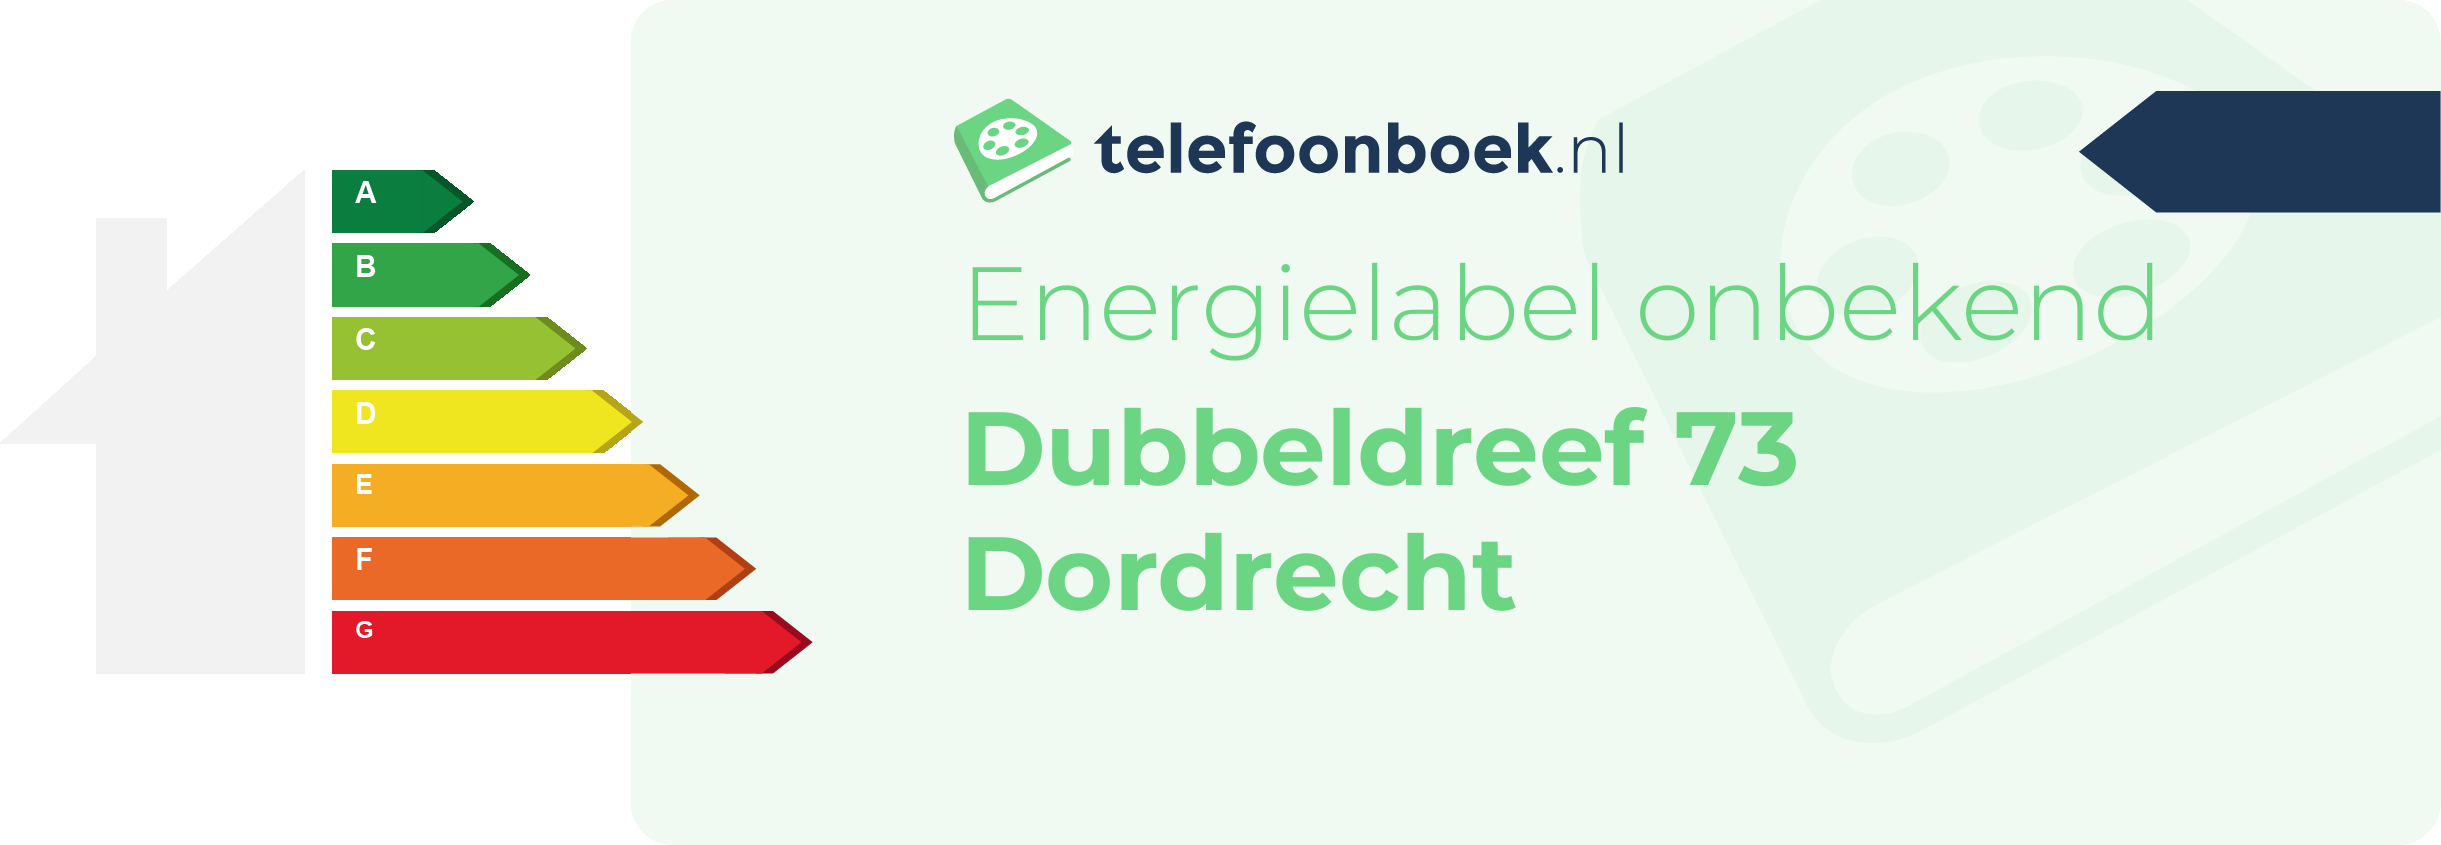 Energielabel Dubbeldreef 73 Dordrecht